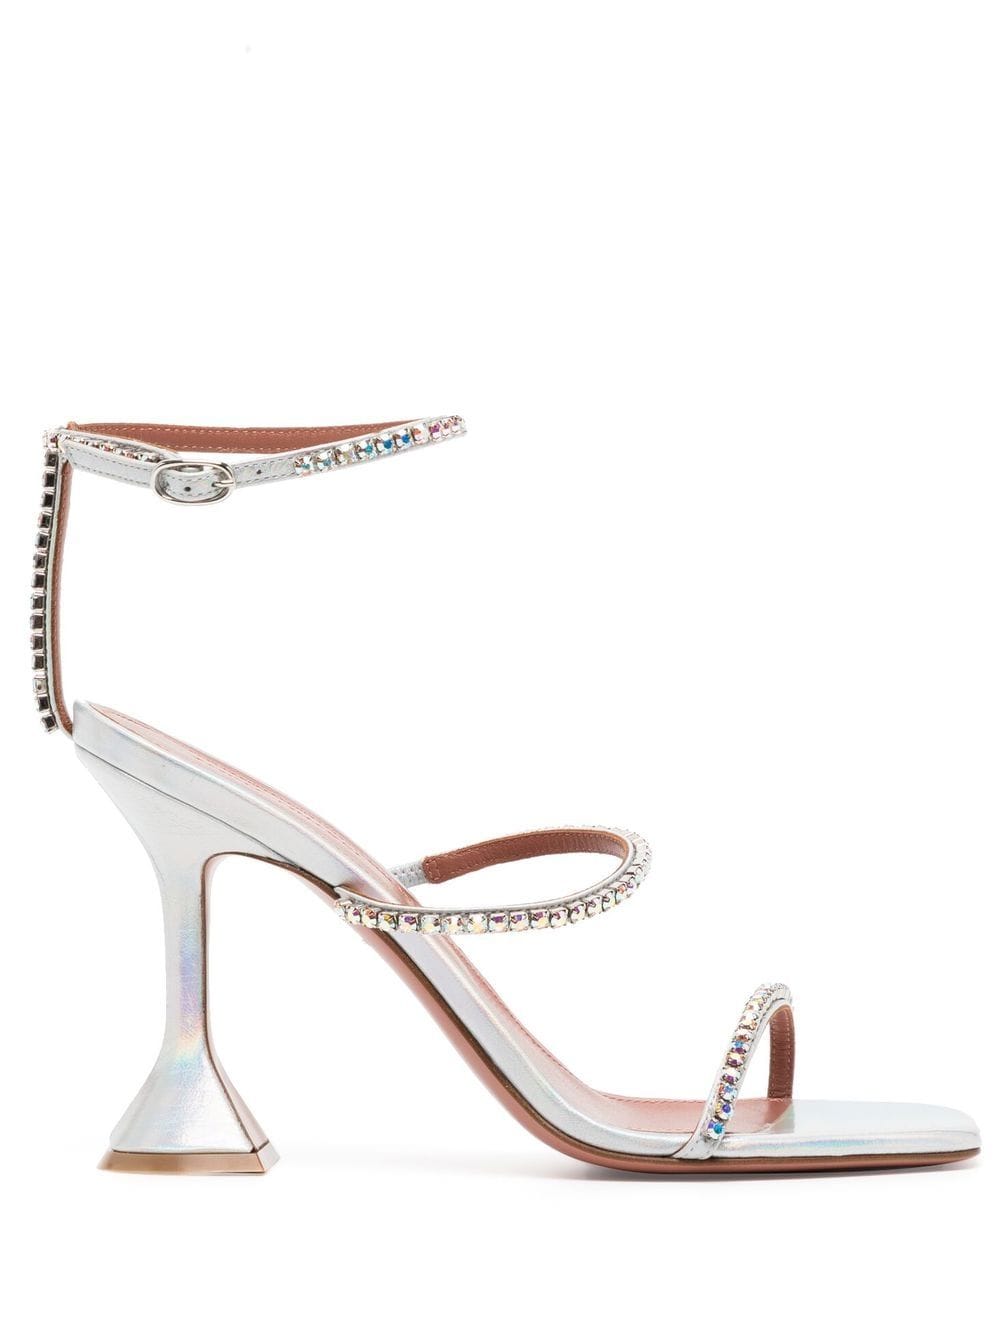 Amina Muaddi Gilda 95mm crystal-embellished sandals - Silver von Amina Muaddi